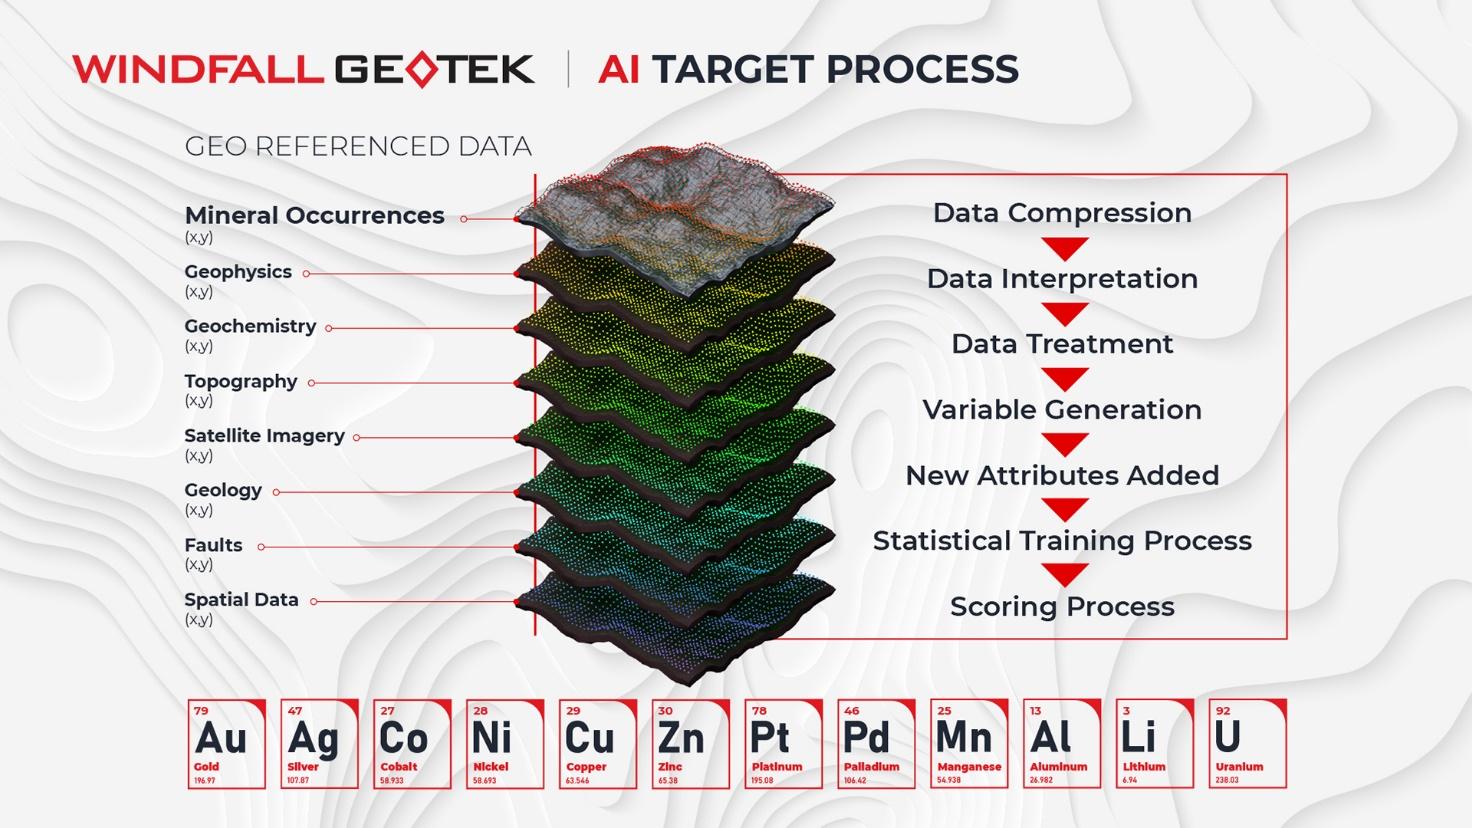 Windfall Geotek Proprietary AI Target Process Model